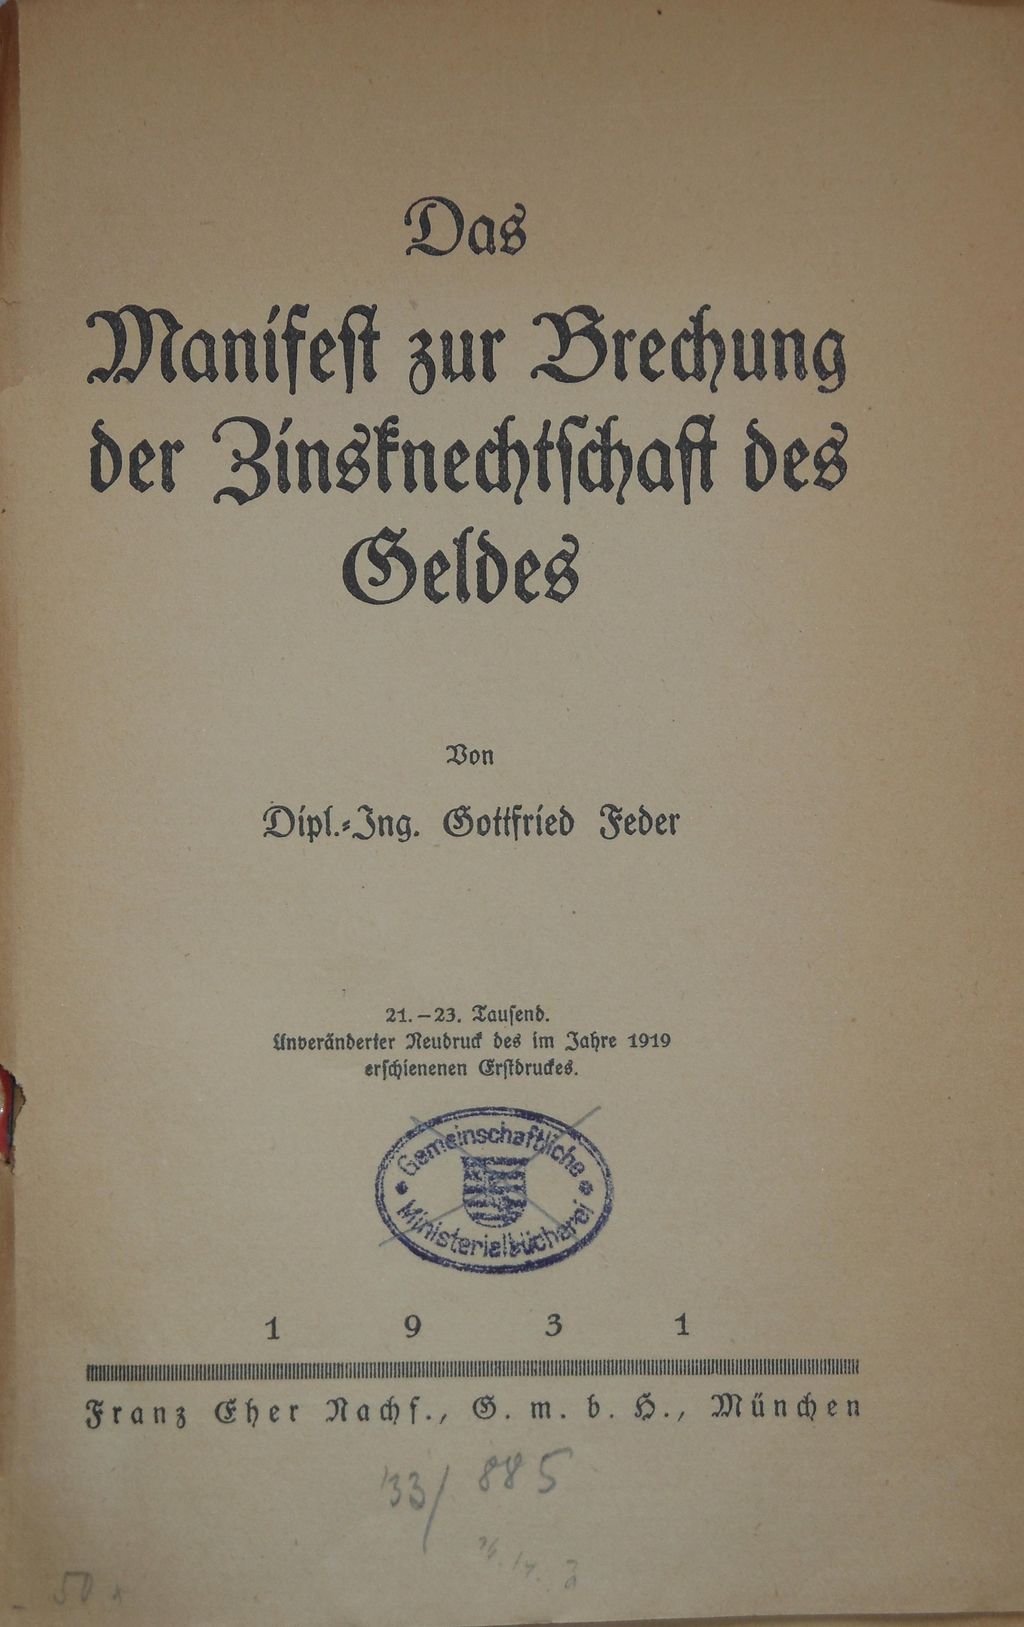 Exponat: Buch: Feder, Gottfried "An Alle, Alle! Das Manifest zur Brechung der Zinsknechtschaft", 1932